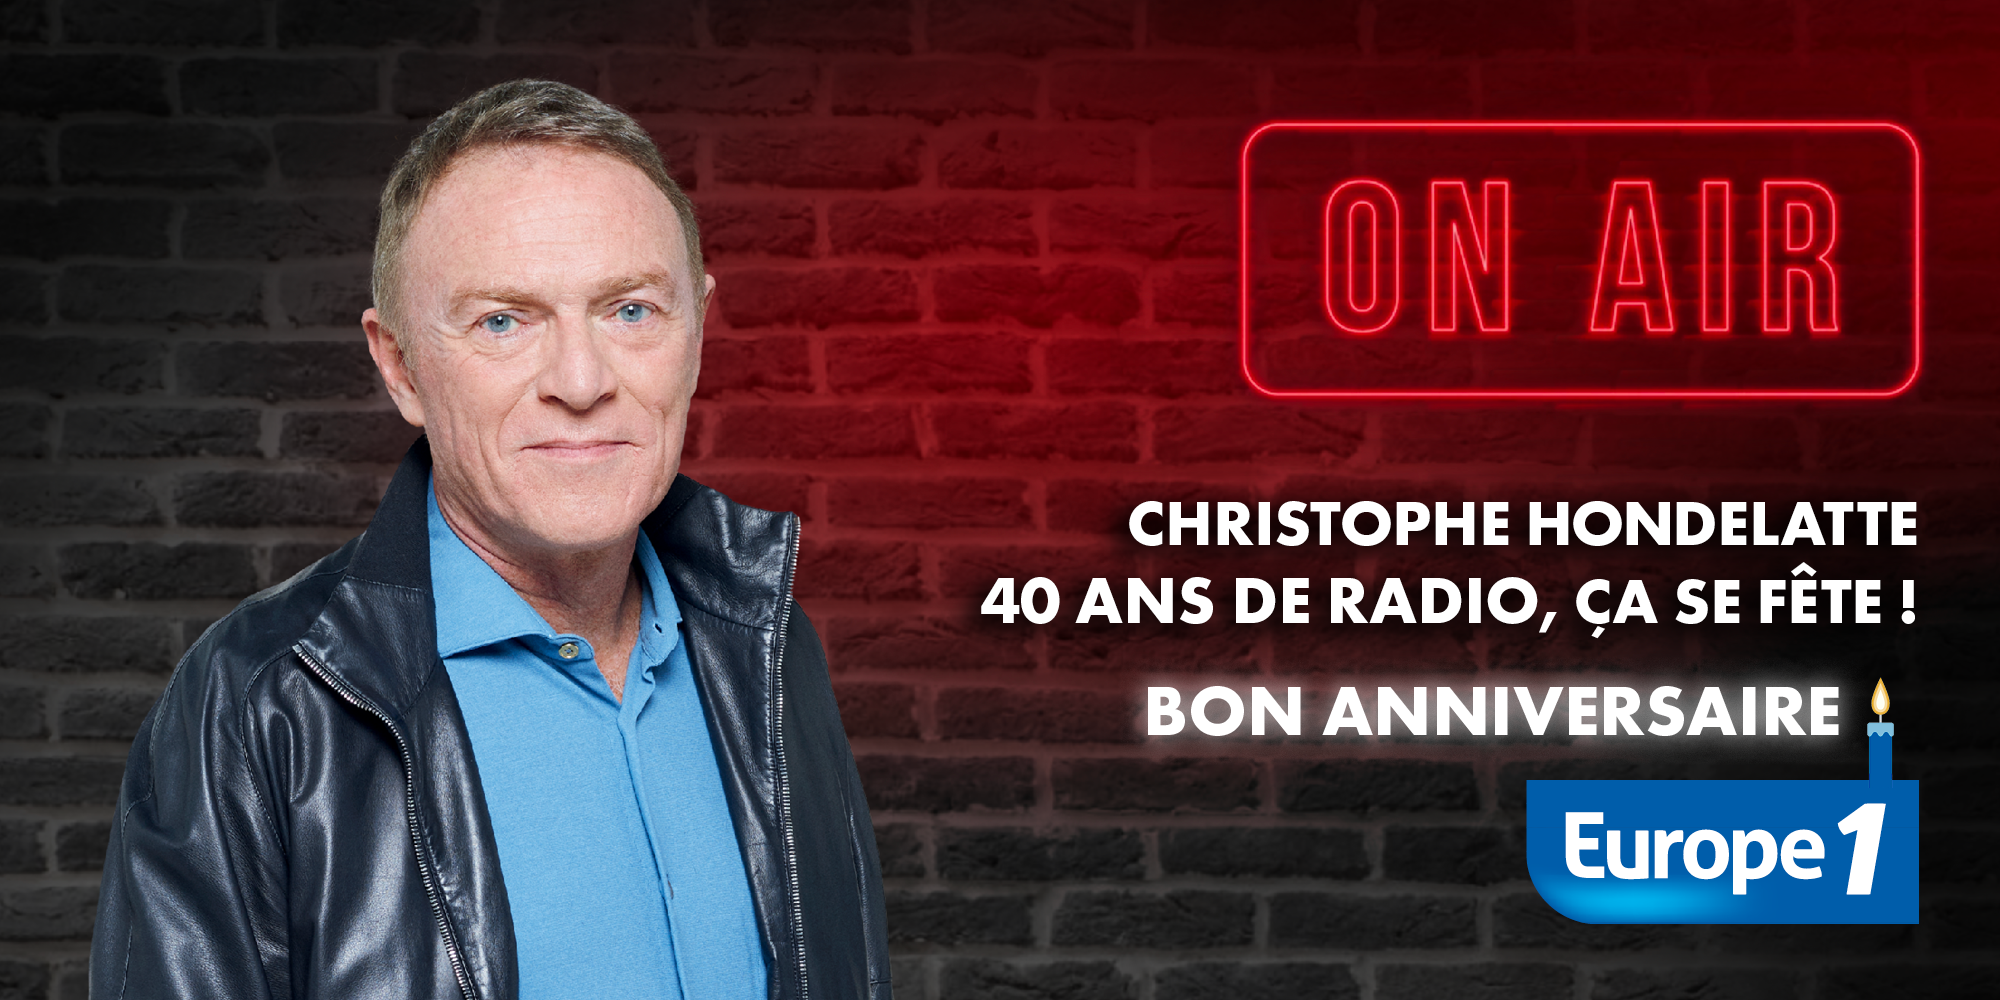 Christophe Hondelatte a fêté ses 40 ans de radio